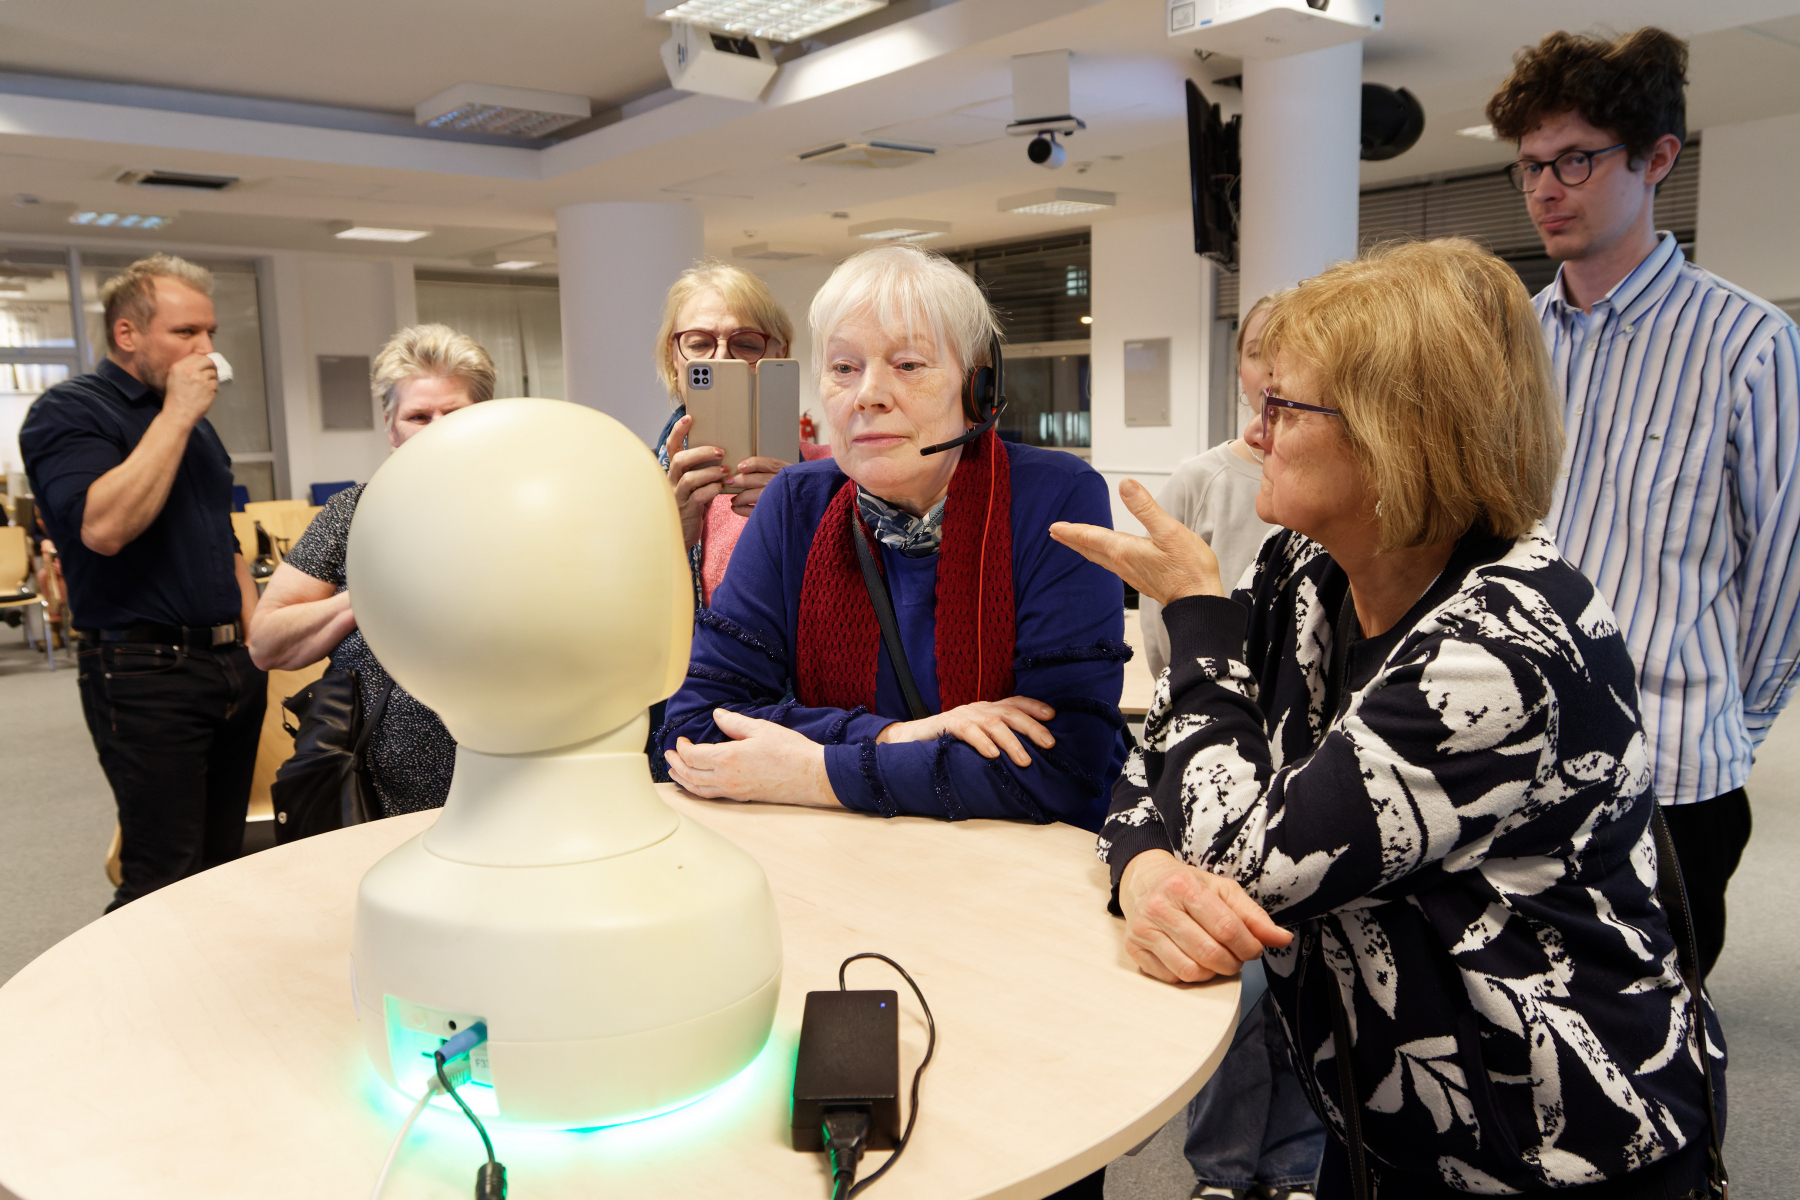 Budúcnosť konverzácie? Sociálny robot ako spoločník s diagnostickými schopnosťami – Mgr. Róbert Sabo, PhD.